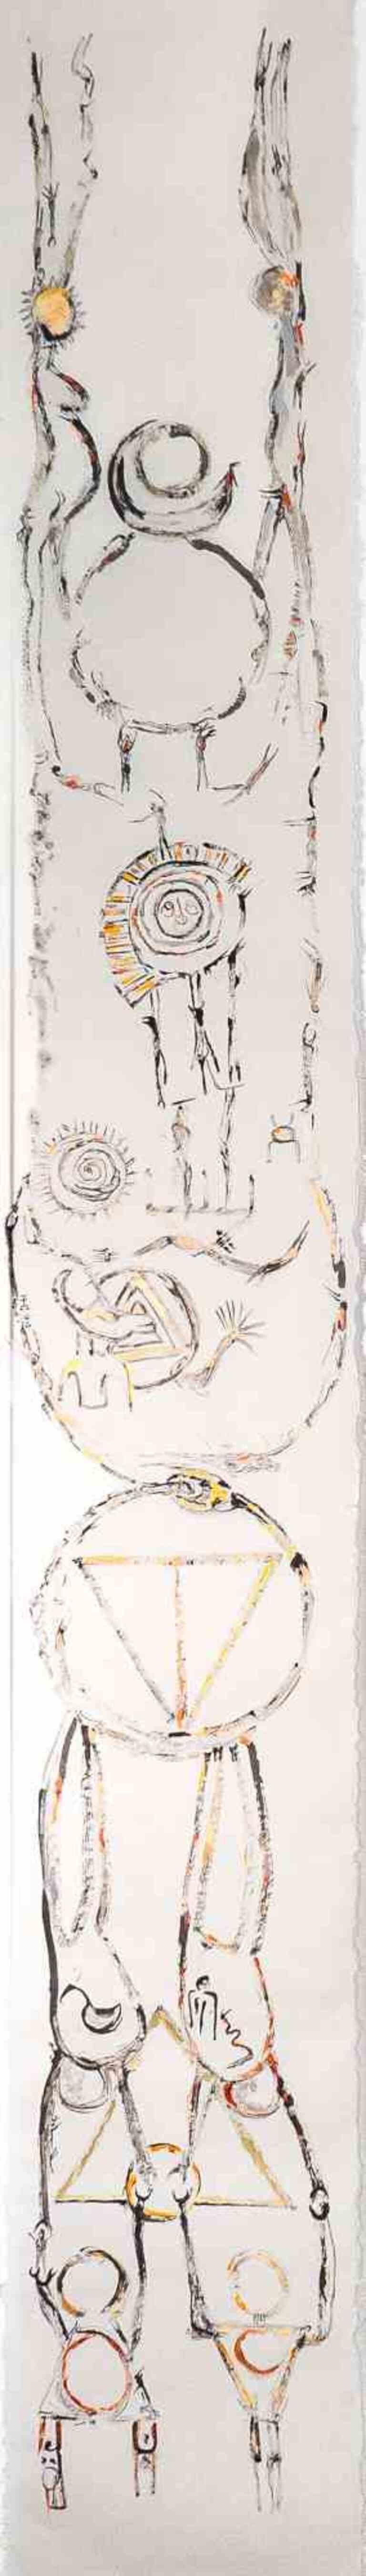 Göttin und Säule, Beschützerin der Morgenröte der Vollstrecker ist eine Zeichnung der iranischen Malerin und Dichterin Parimah Avani aus dem Jahr 2023.

China-Tusche, Acryl und Kohle auf traditionellem japanischem Kozo-Papier, mit aufgetragenem